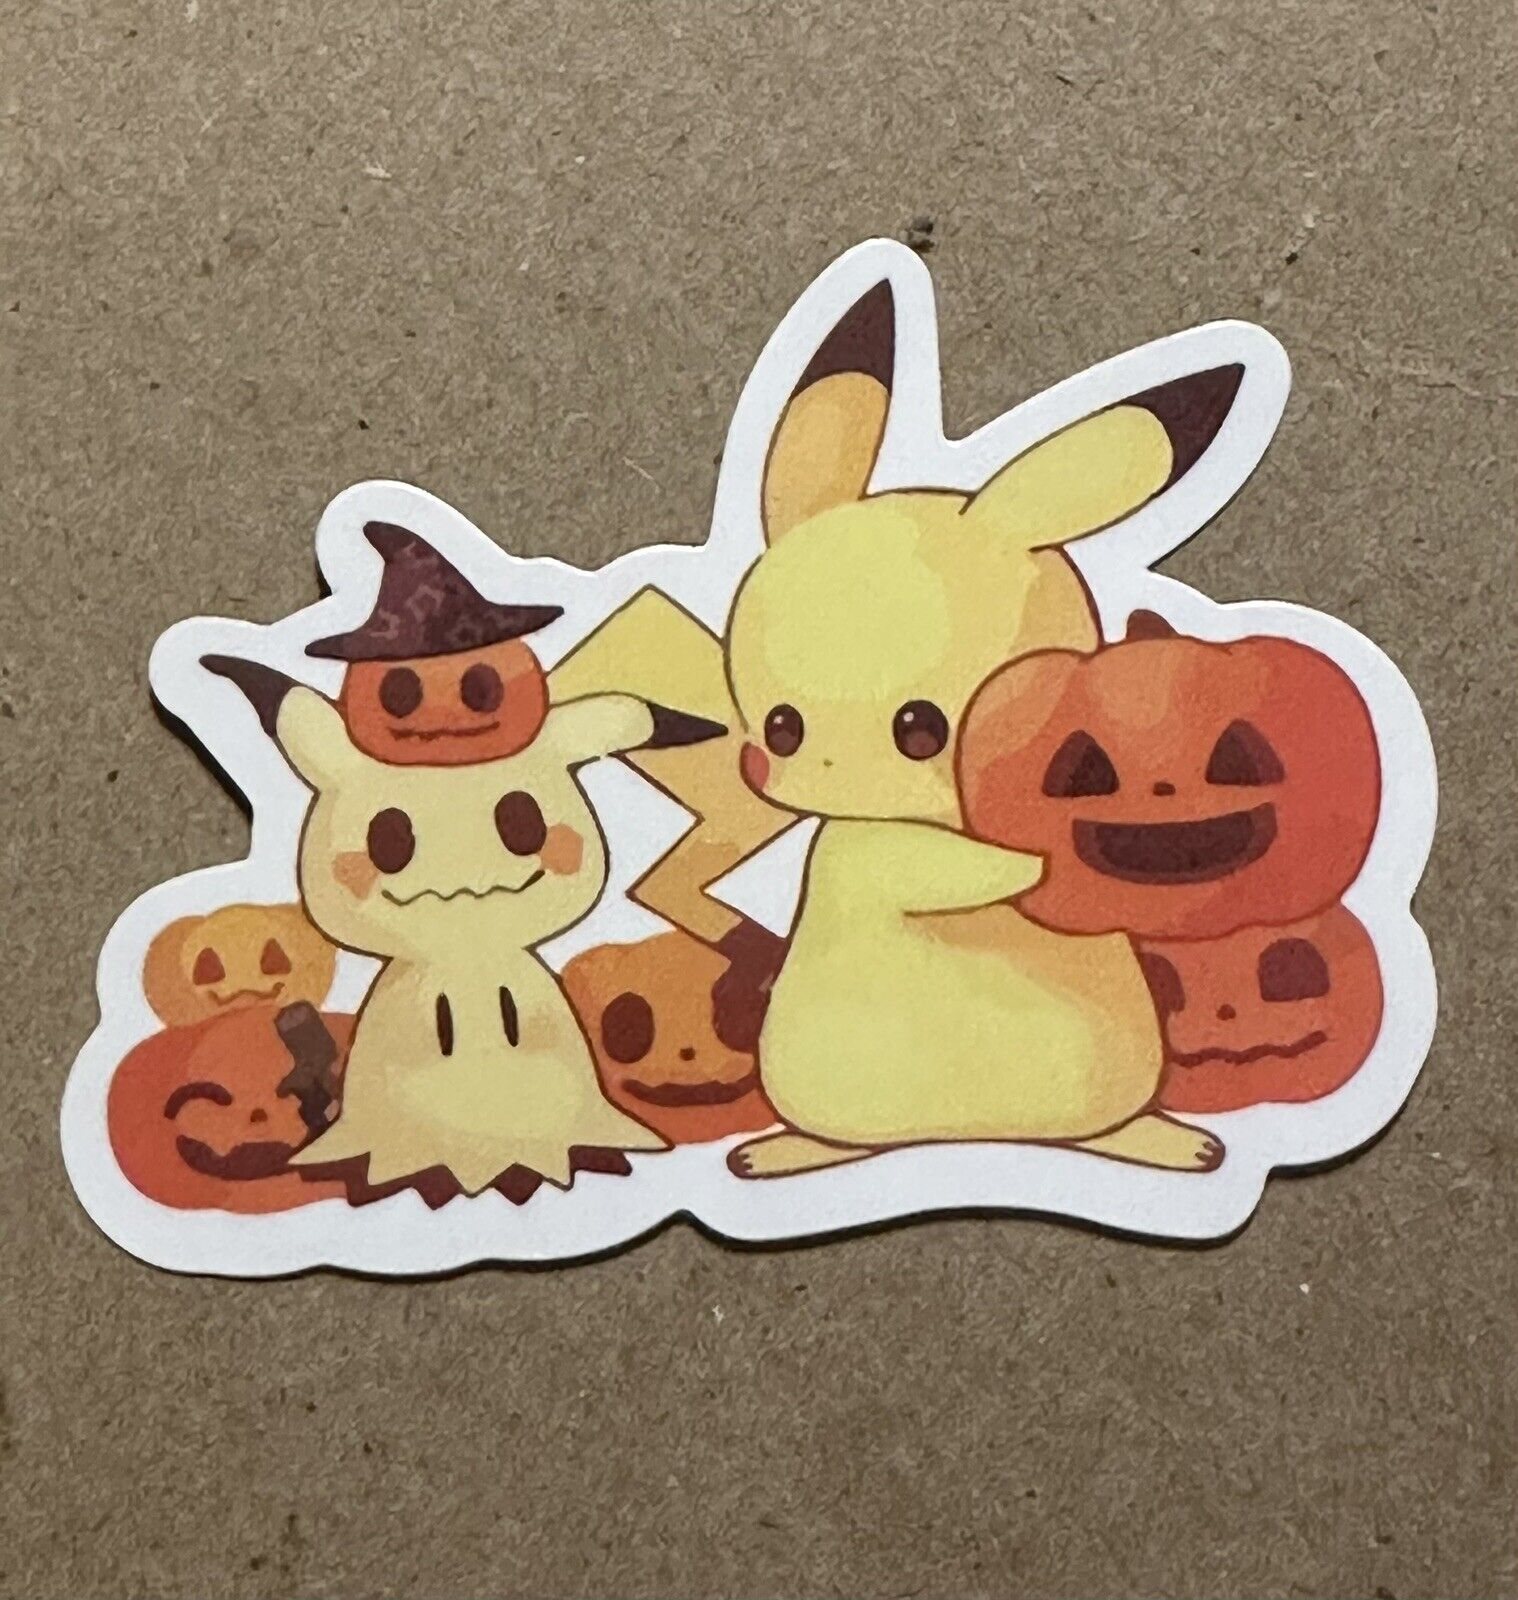 Pokemon Spooky Stickers-Pikachu and Mimikyu with Jack O Lanterns-Halloween